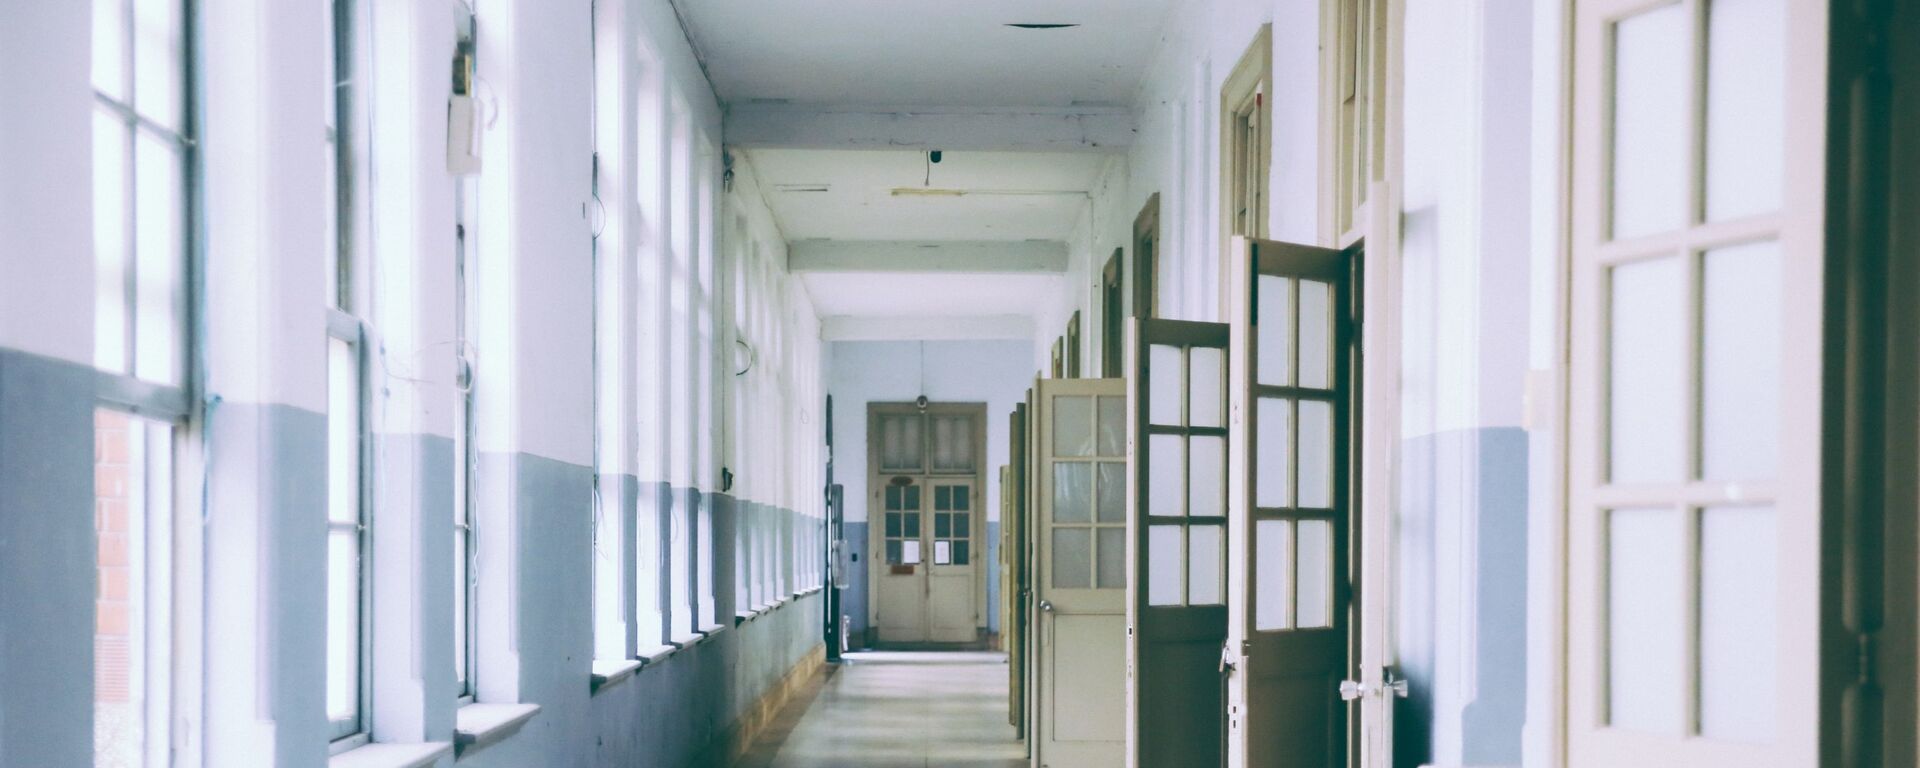 Школьный коридор, фото из архива - Sputnik Азербайджан, 1920, 07.12.2021